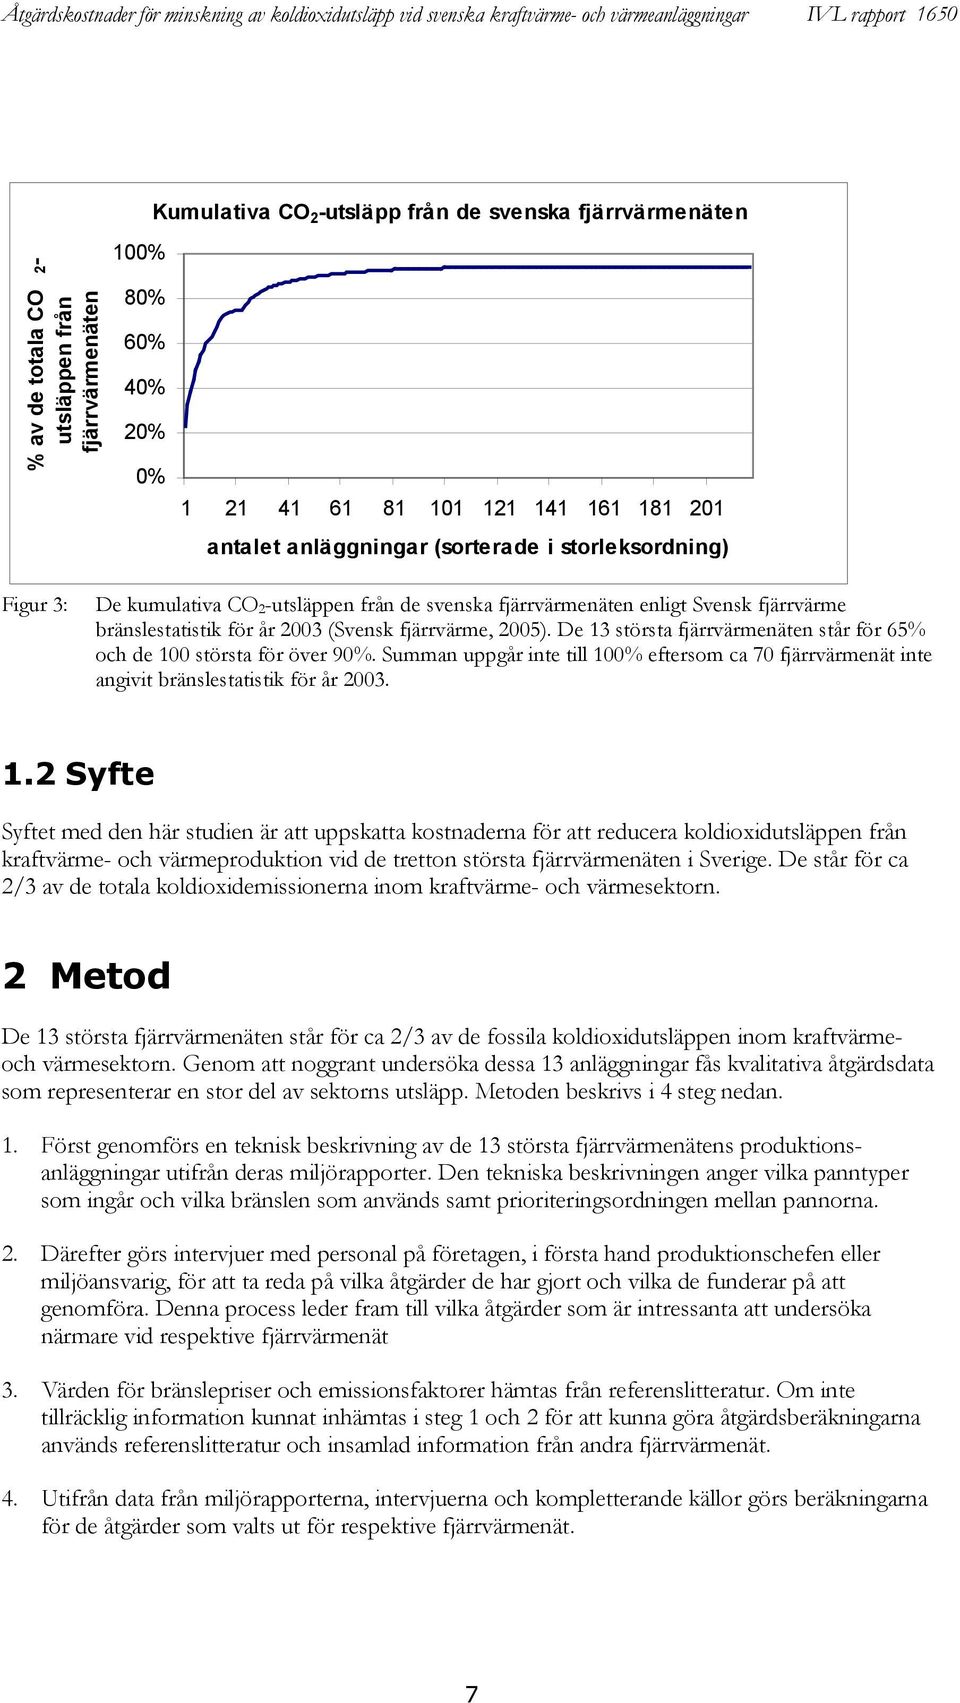 De 13 största fjärrvärmenäten står för 65% och de 100 största för över 90%. Summan uppgår inte till 100% eftersom ca 70 fjärrvärmenät inte angivit bränslestatistik för år 2003. 1.2 Syfte Syftet med den här studien är att uppskatta kostnaderna för att reducera koldioxidutsläppen från kraftvärme- och värmeproduktion vid de tretton största fjärrvärmenäten i Sverige.